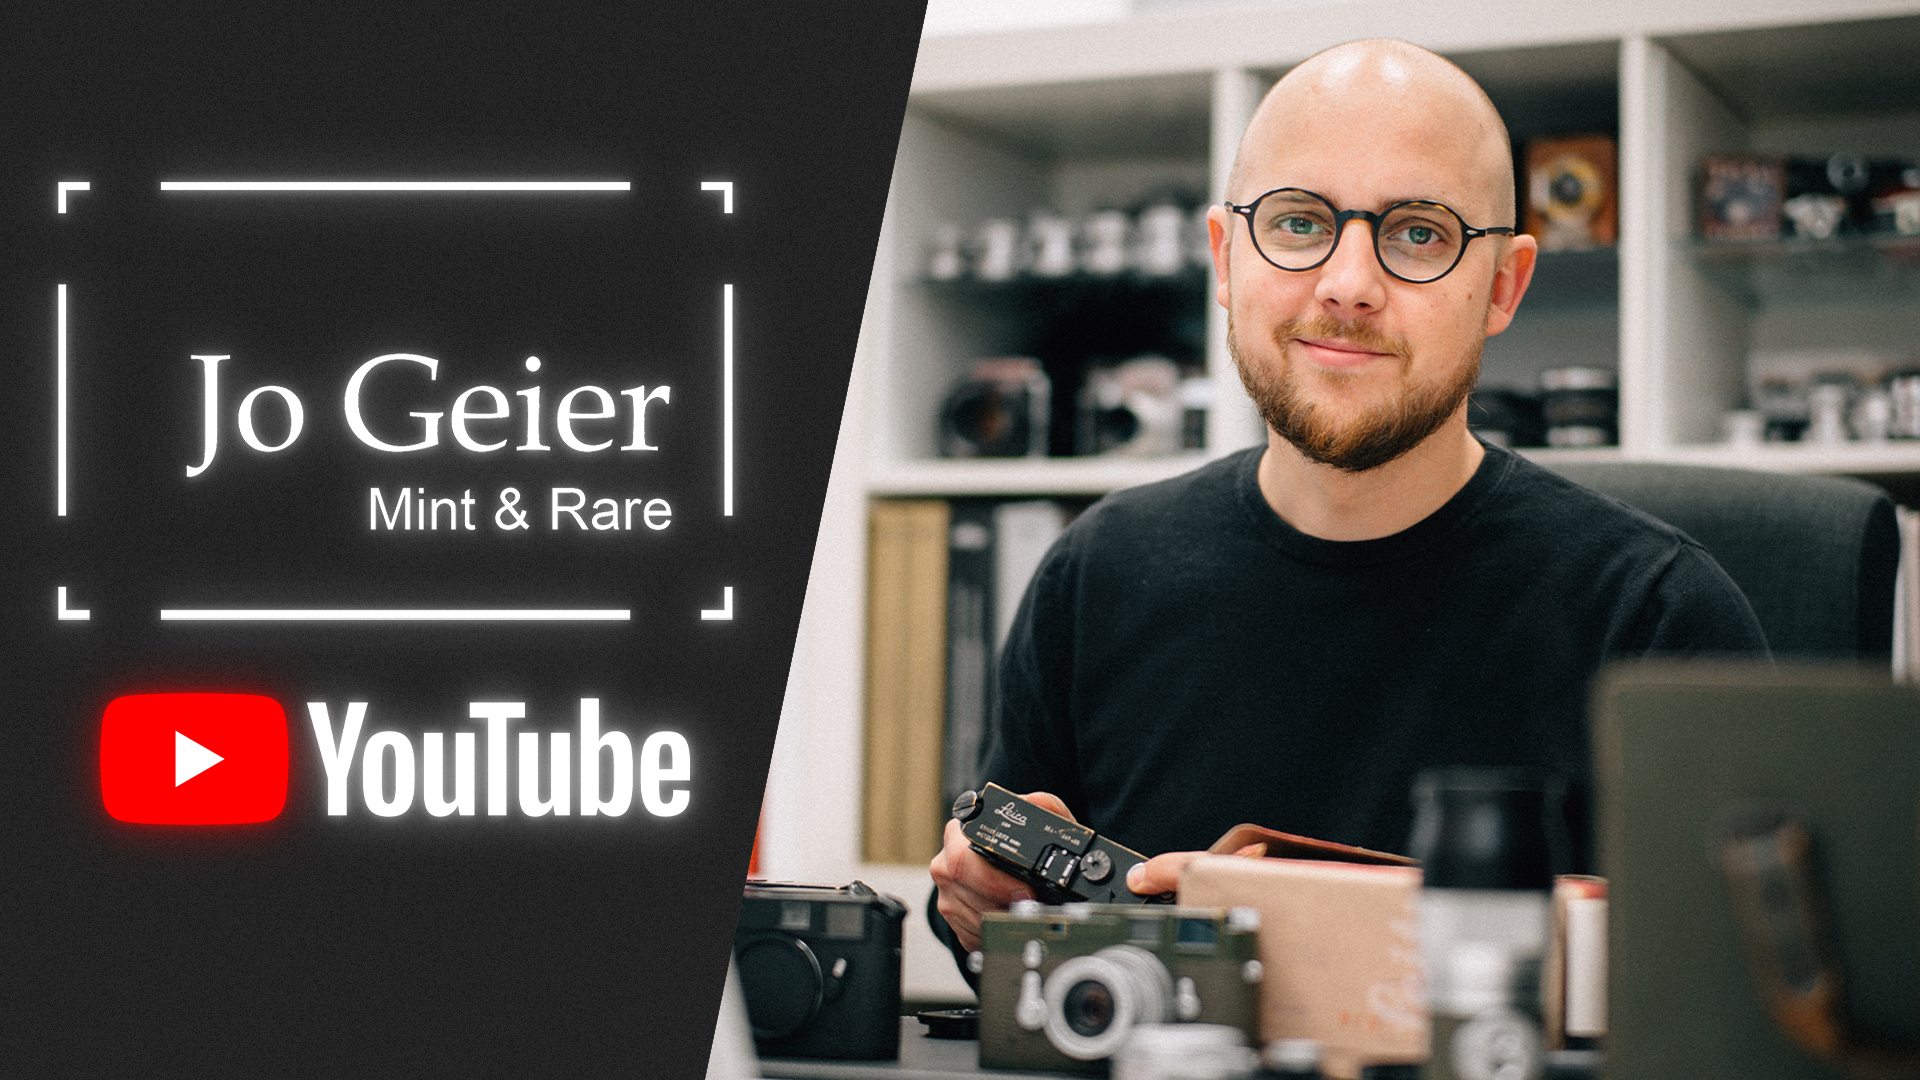 Now on YouTube - Jo Geier